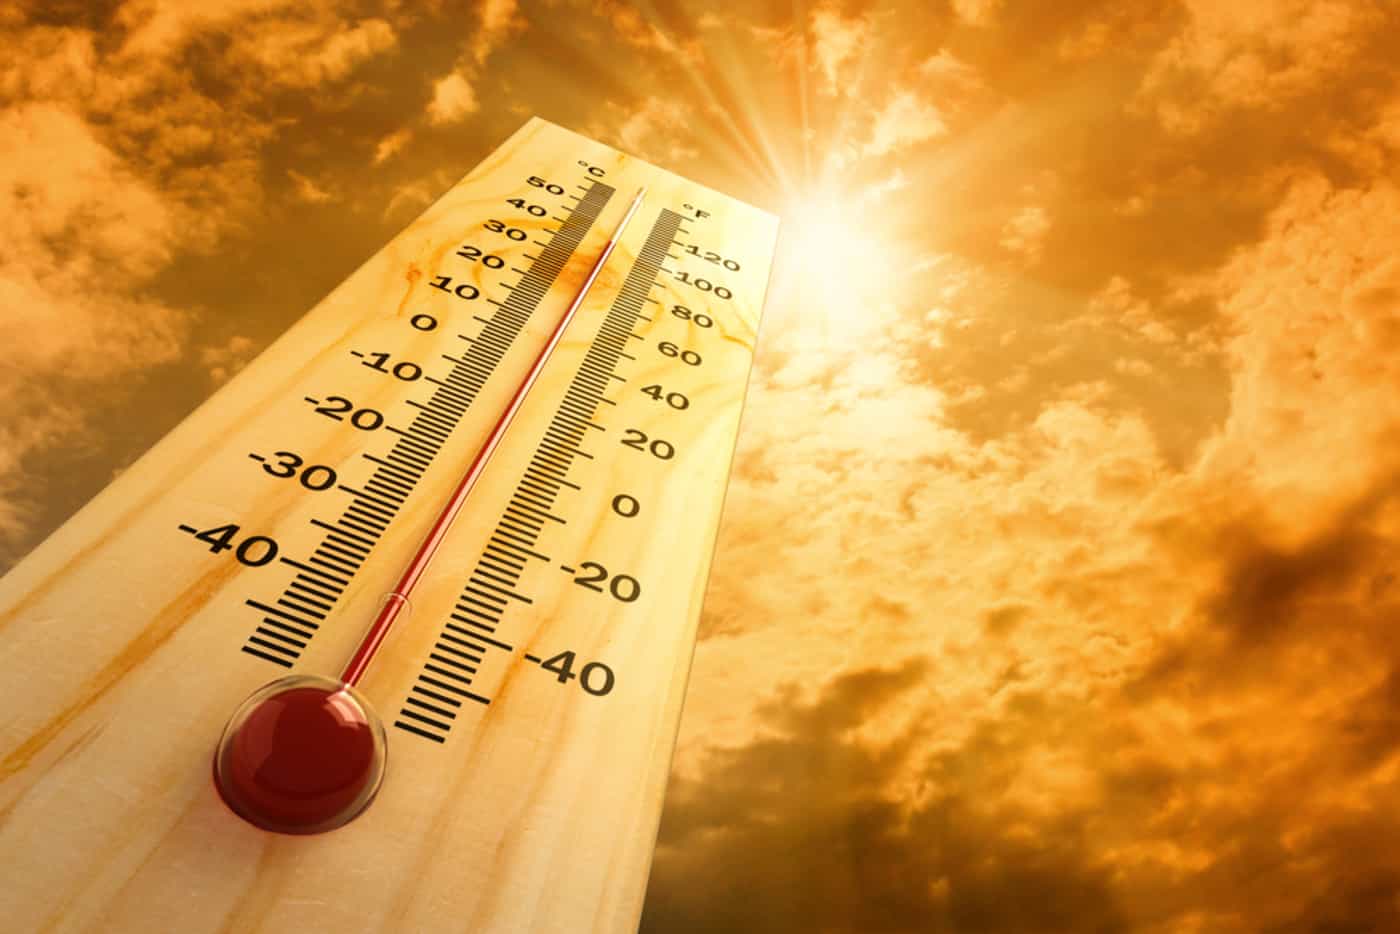 Inmet confirma onda de calor com temperaturas na casa dos 40ºC no Centro-Oeste do Brasil